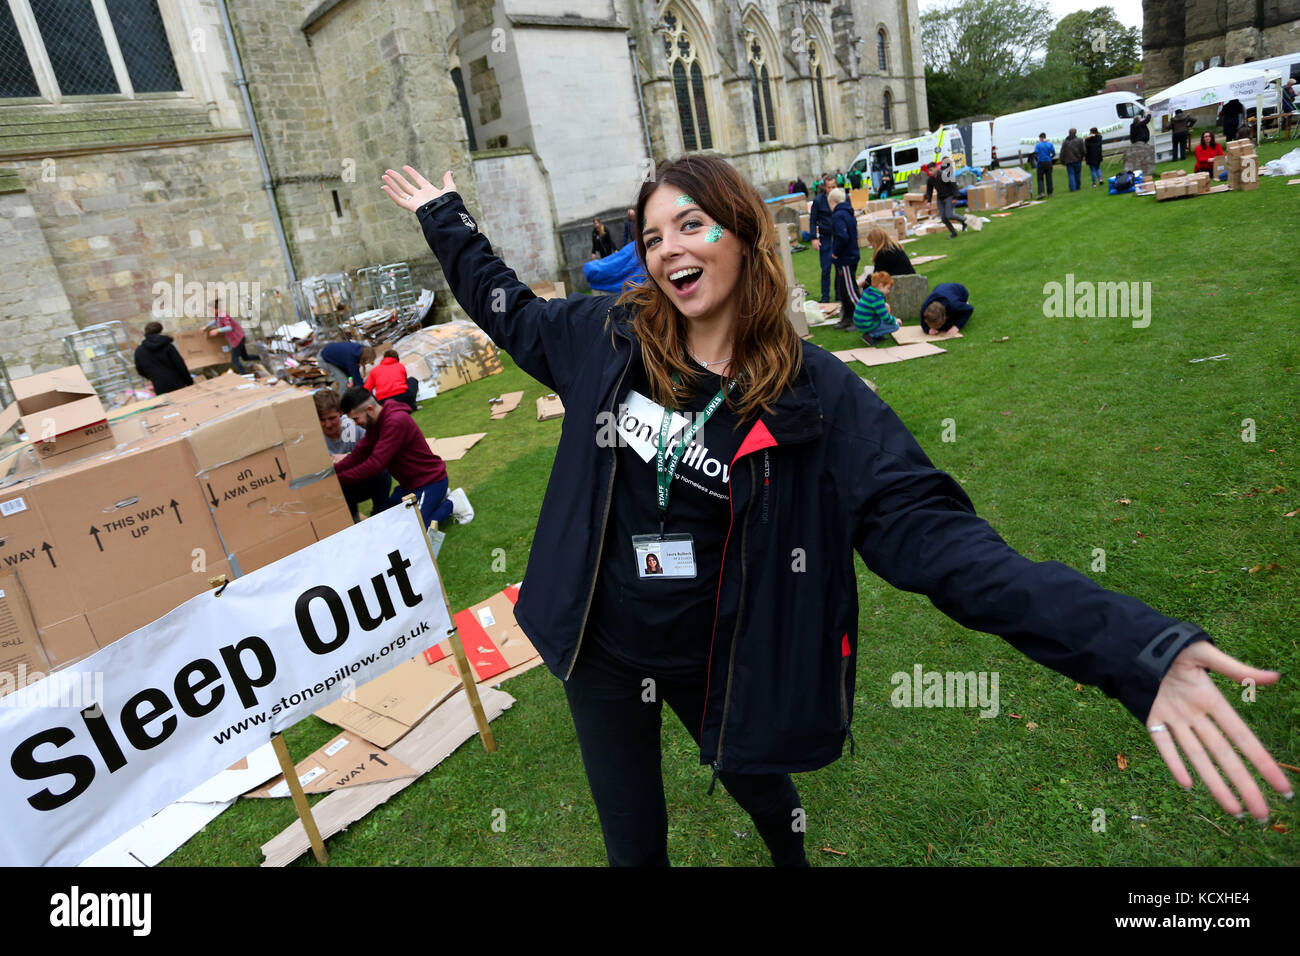 Die großen sleepout in Chichester Cathedral, West Sussex, UK. Eine jährliche Veranstaltung Geld für Obdachlose Liebe stonepillow zu erhöhen. Stockfoto